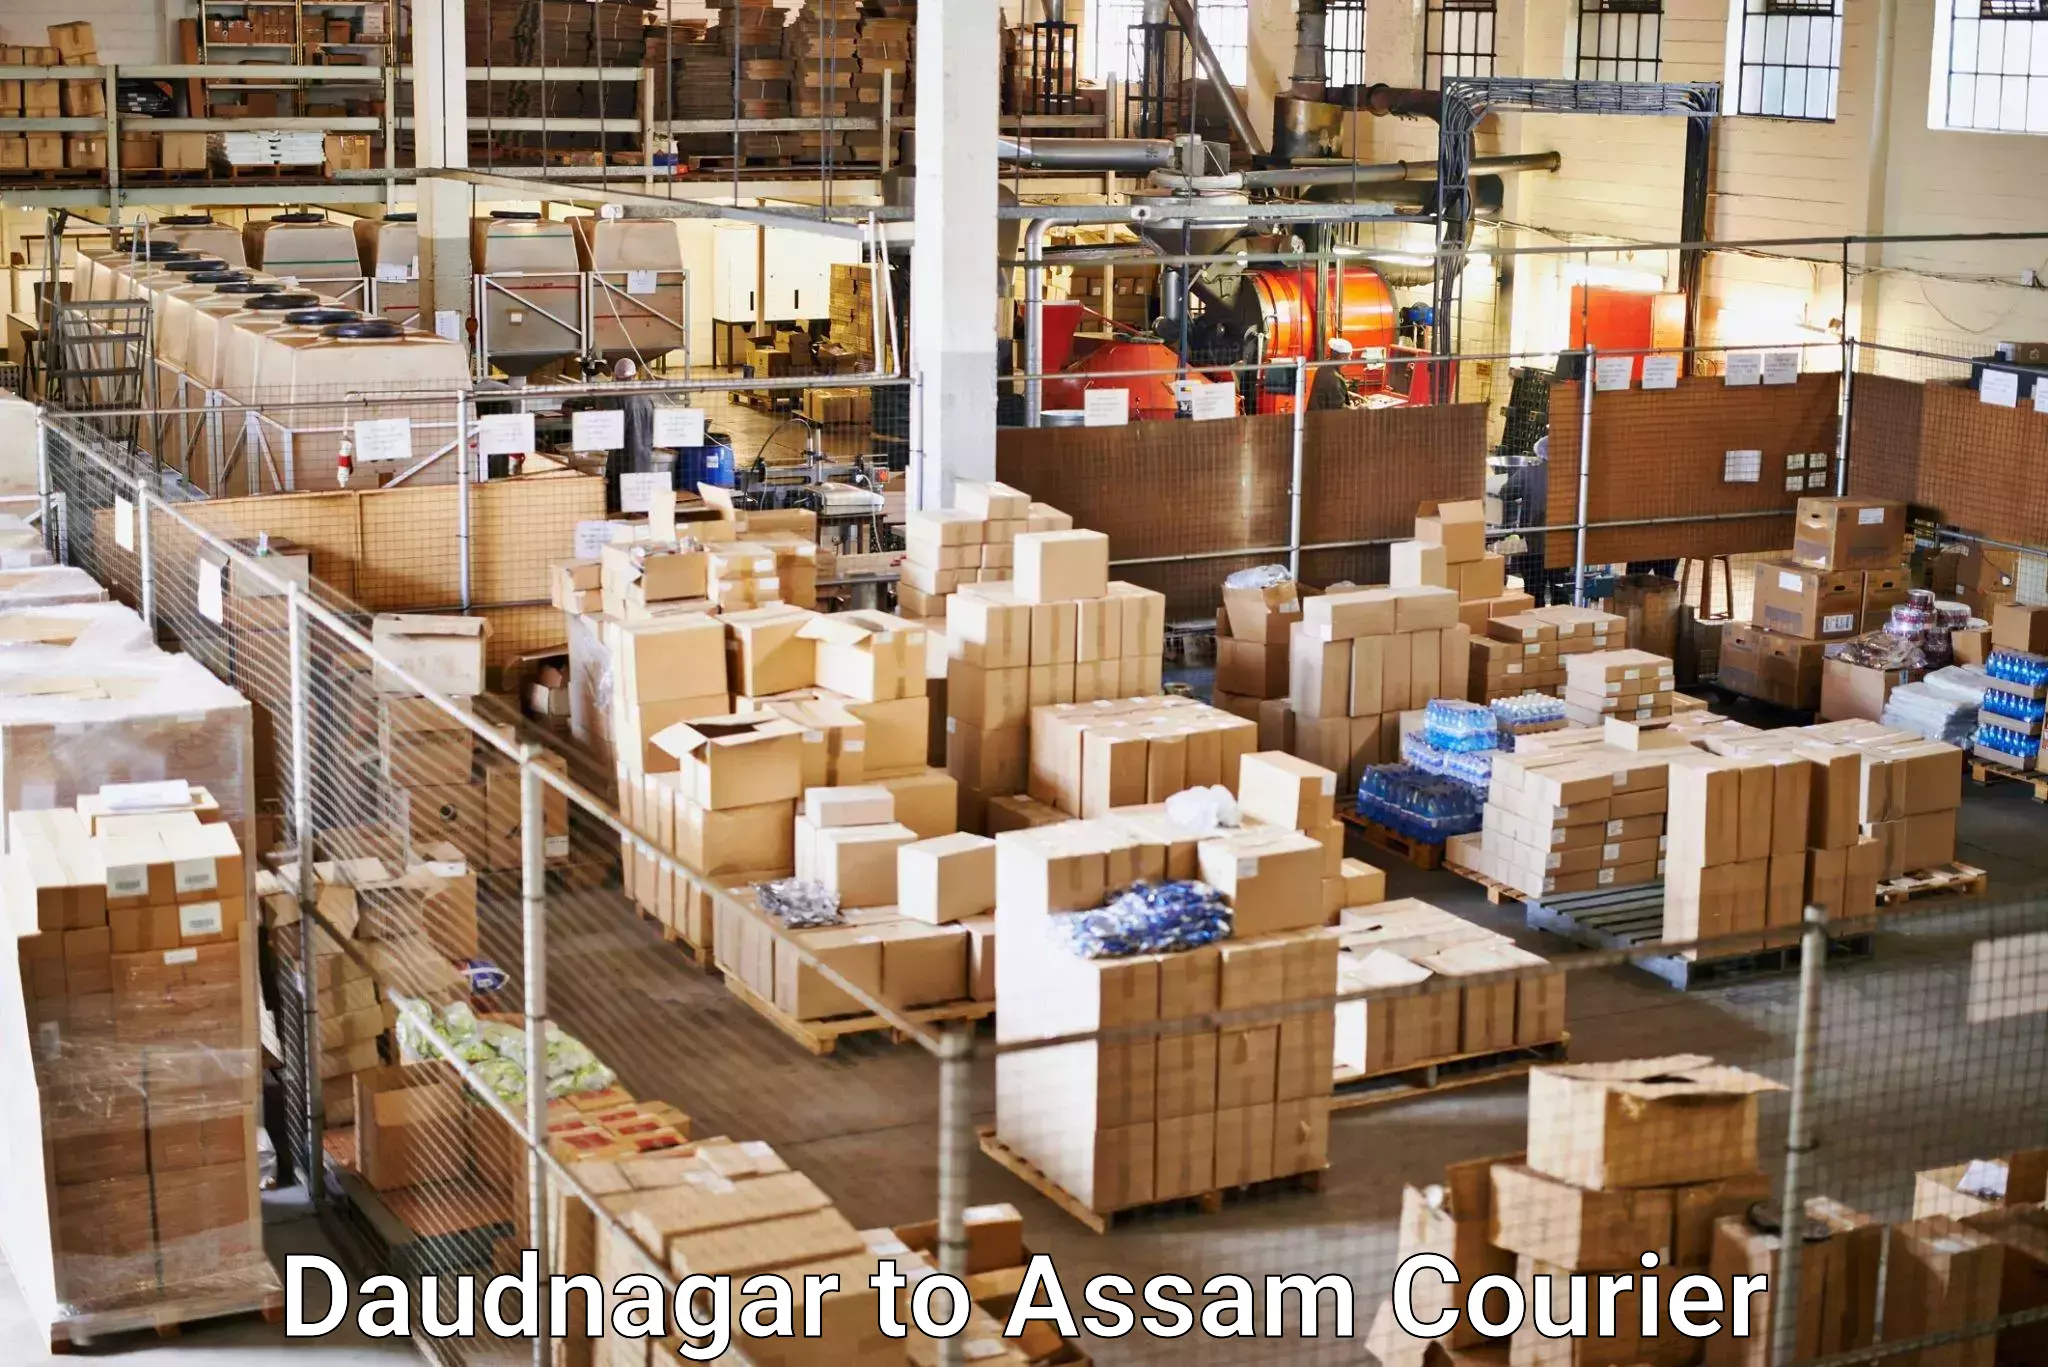 User-friendly courier app Daudnagar to Lala Assam